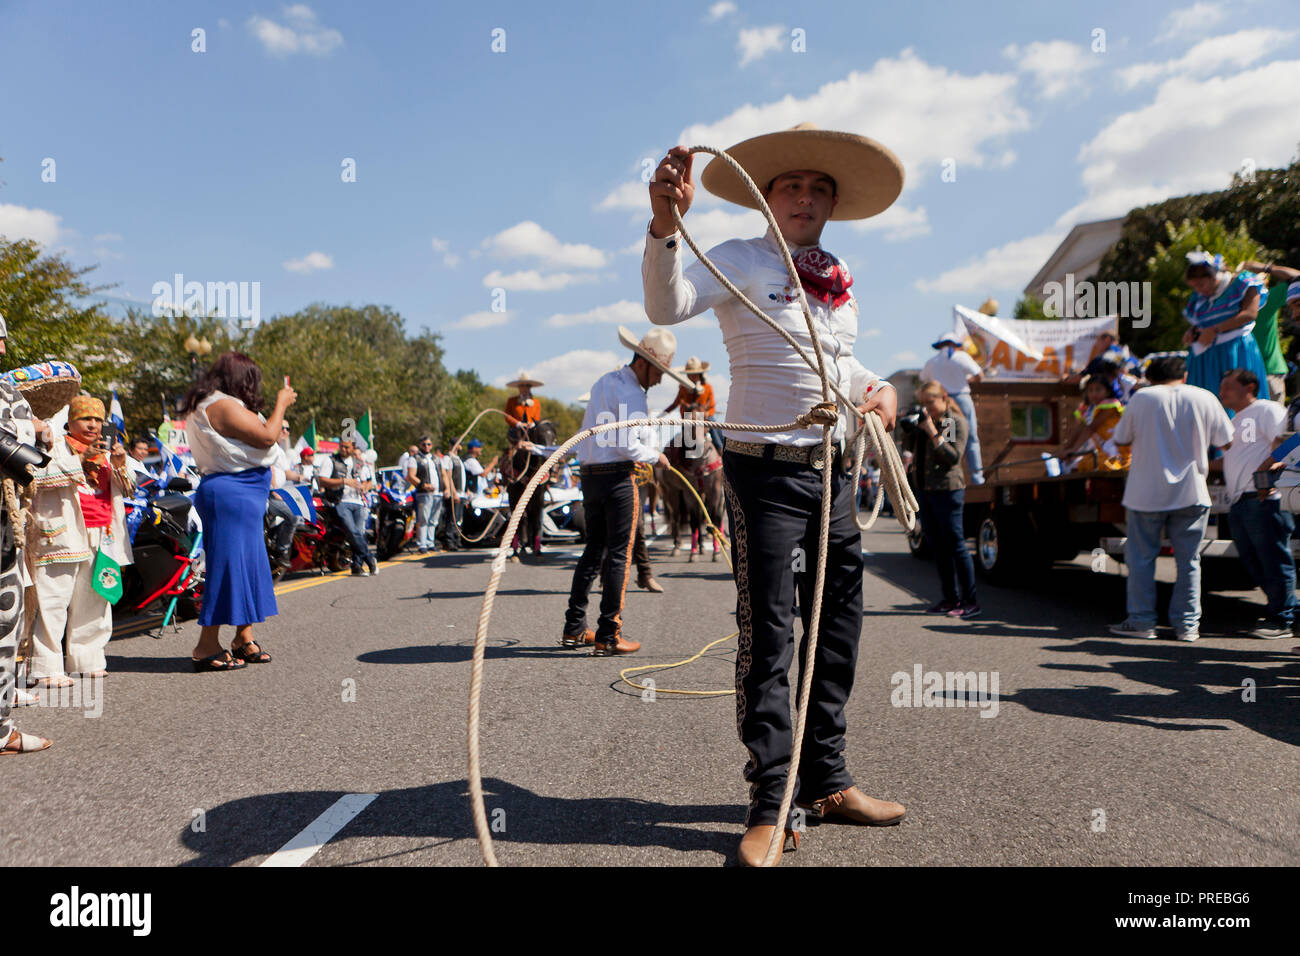 A Vaquero (Mexican cowboy) spinning a lasso Stock Photo